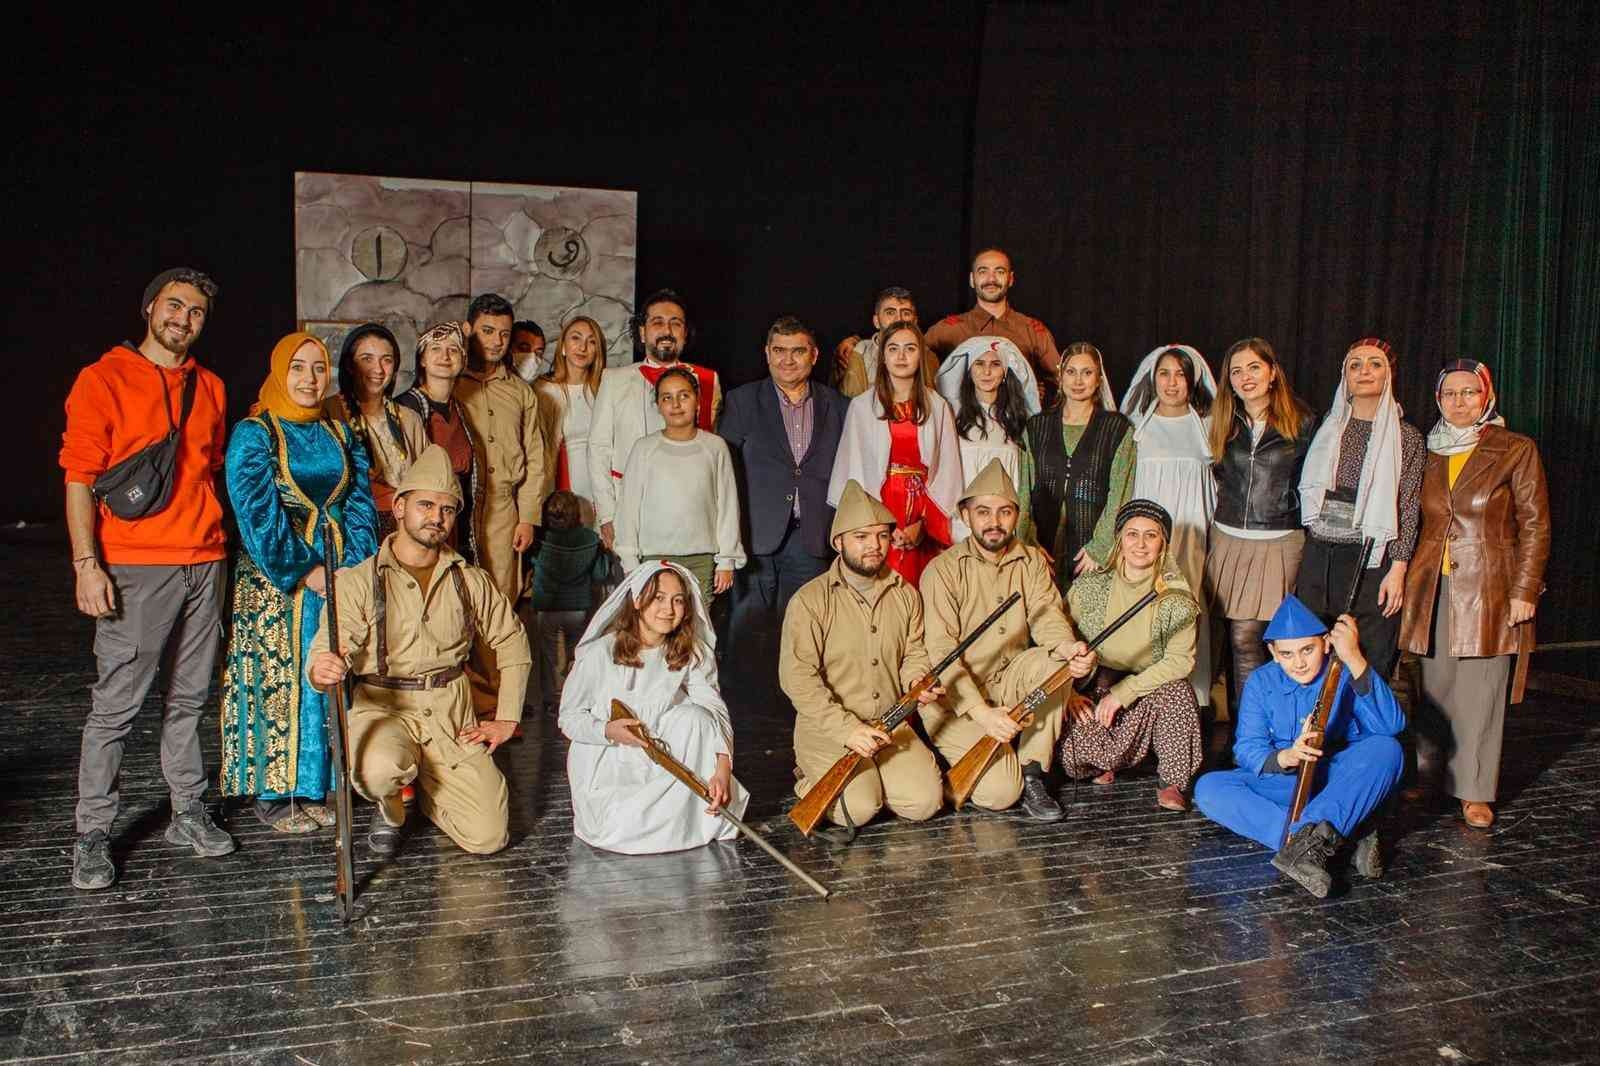 “İşgalden Zafere Osmaniye” tiyatro oyunu sahnelendi #osmaniye